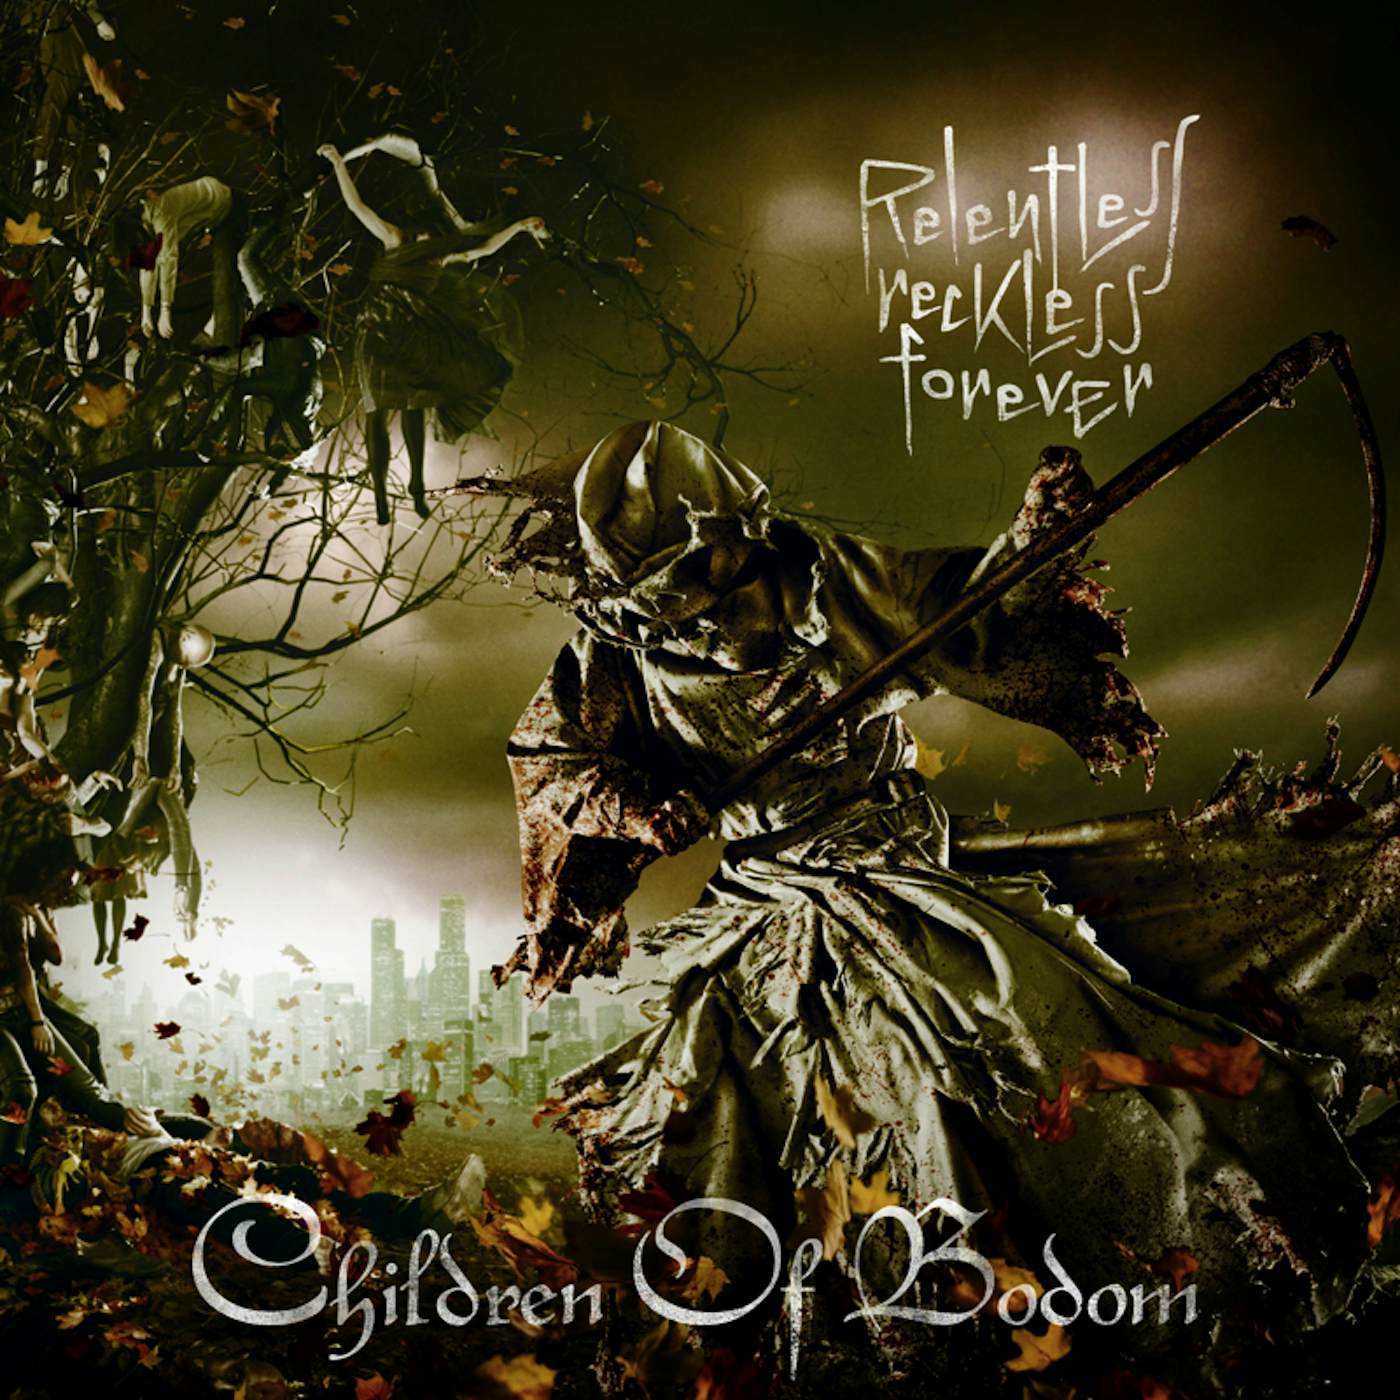 Children Of Bodom RELENTLESS RECKLESS FOREVER CD